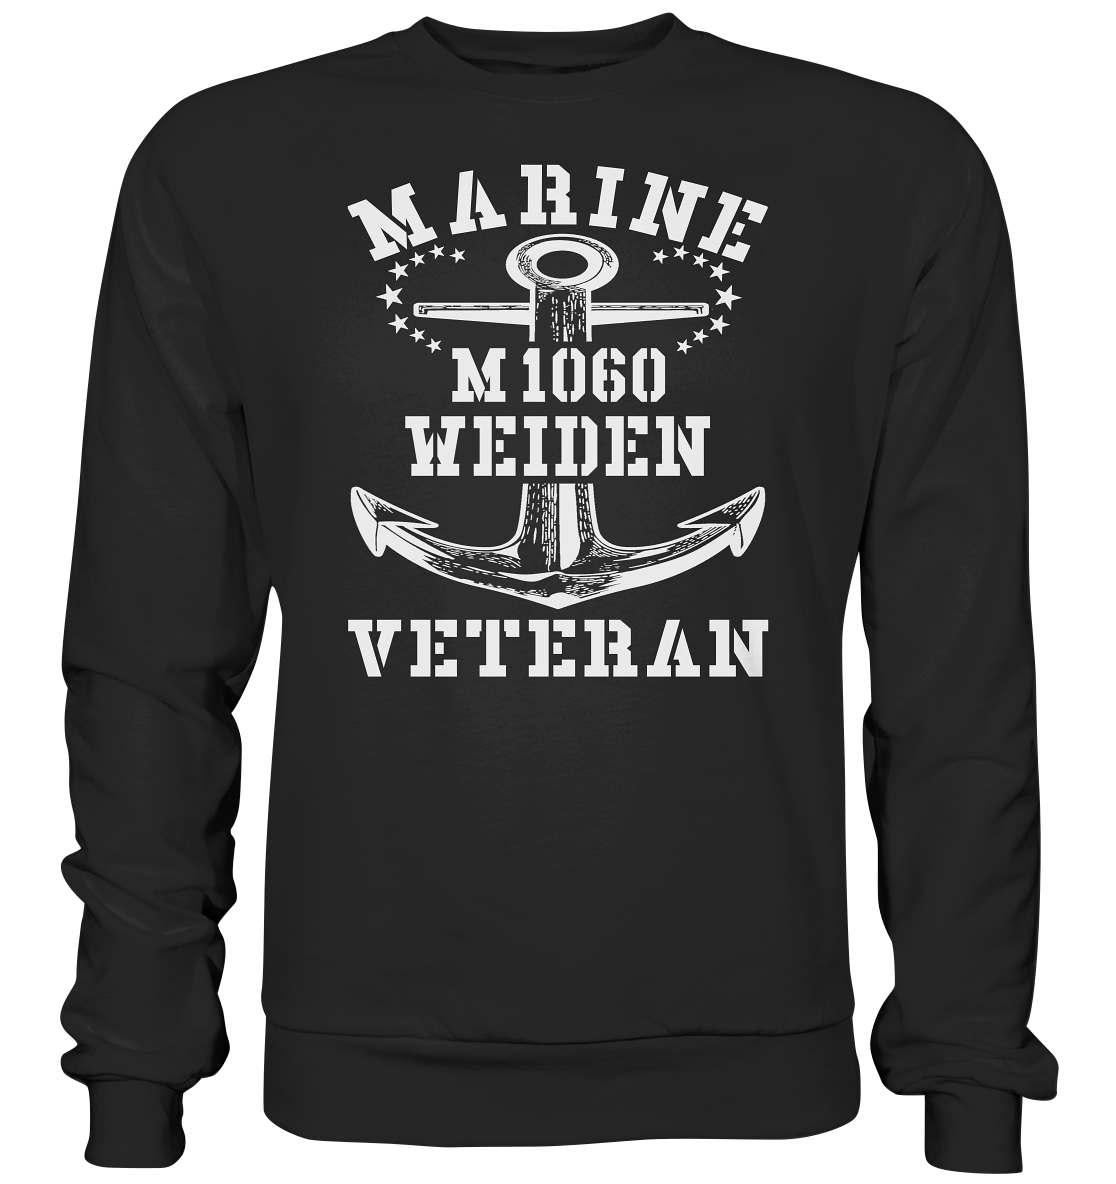 Mij.-Boot M1060 WEIDEN Marine Veteran - Premium Sweatshirt